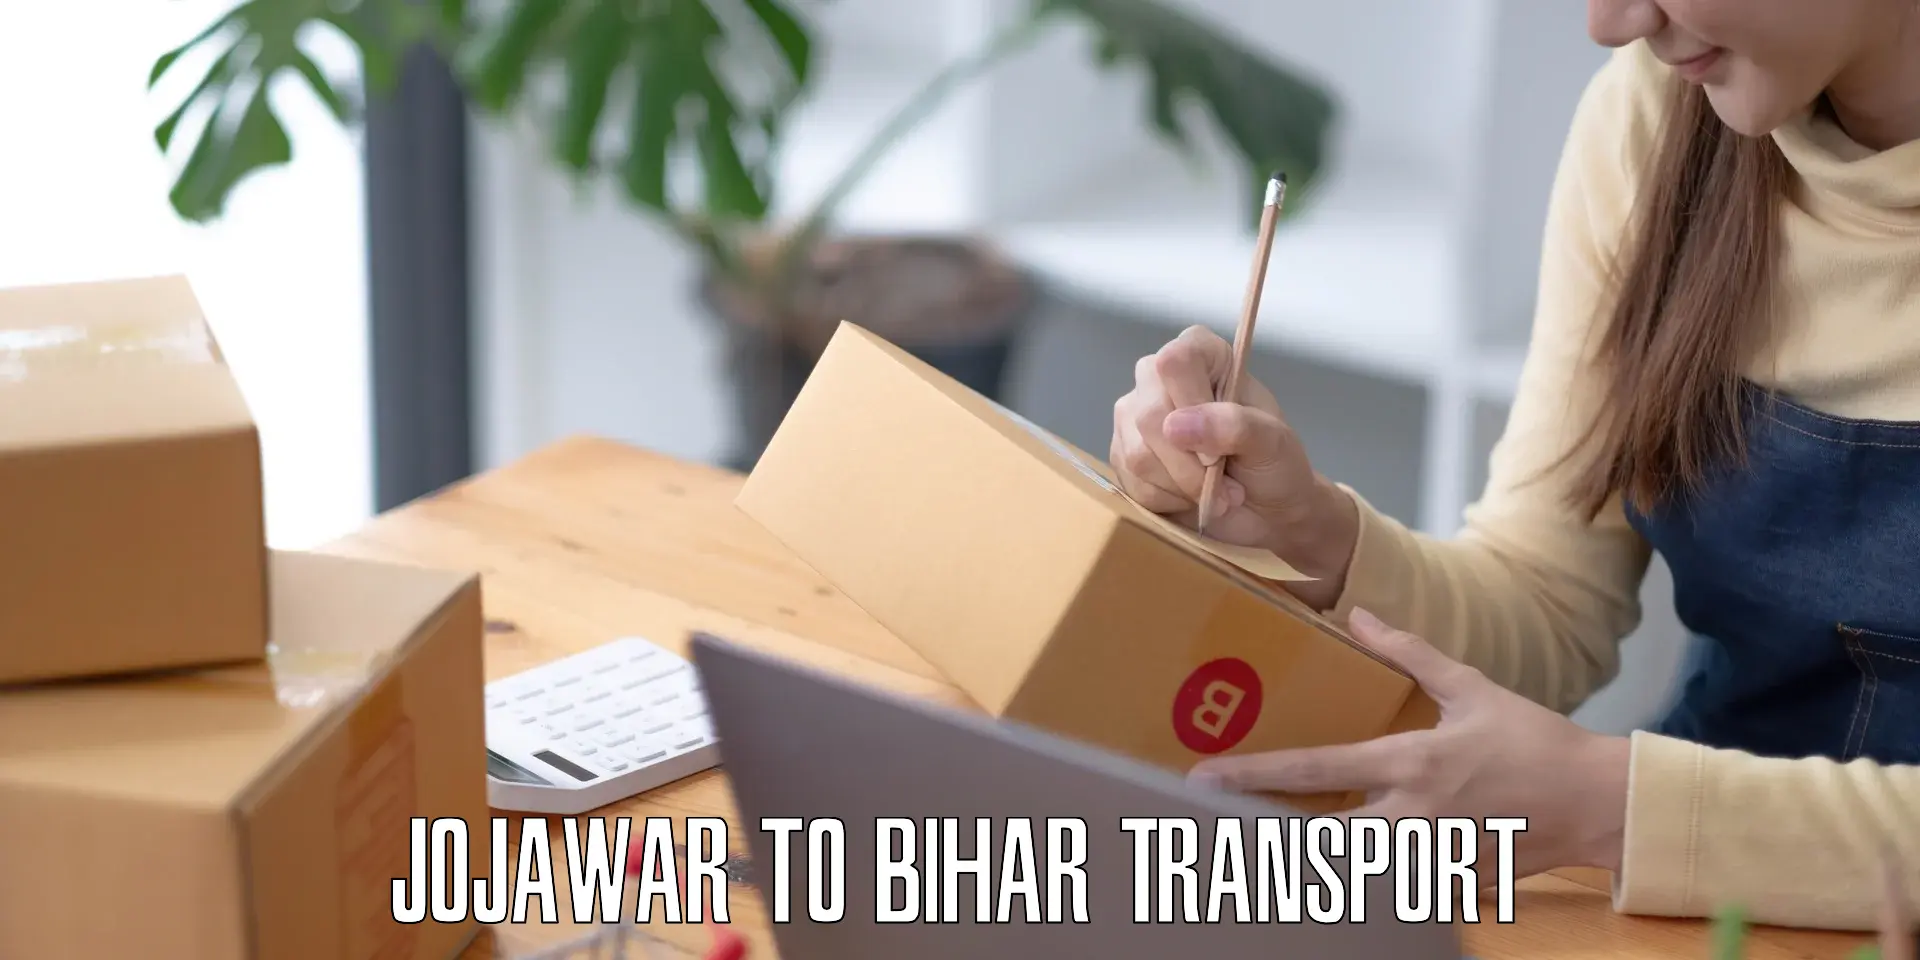 Furniture transport service Jojawar to Mirganj